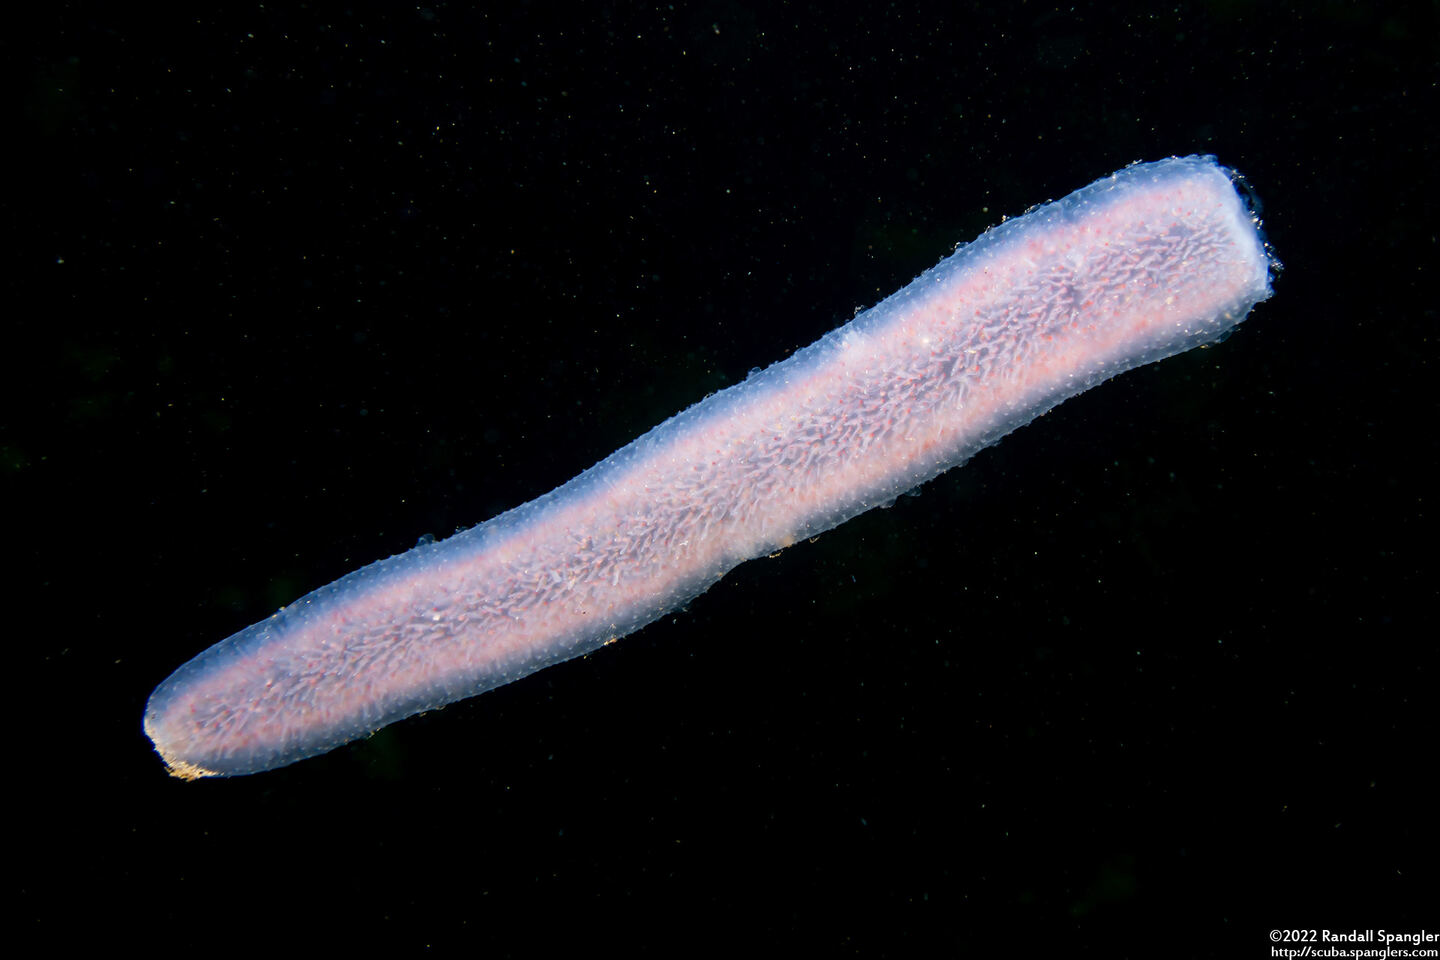 Pyrosoma atlanticum (Pyrosome)